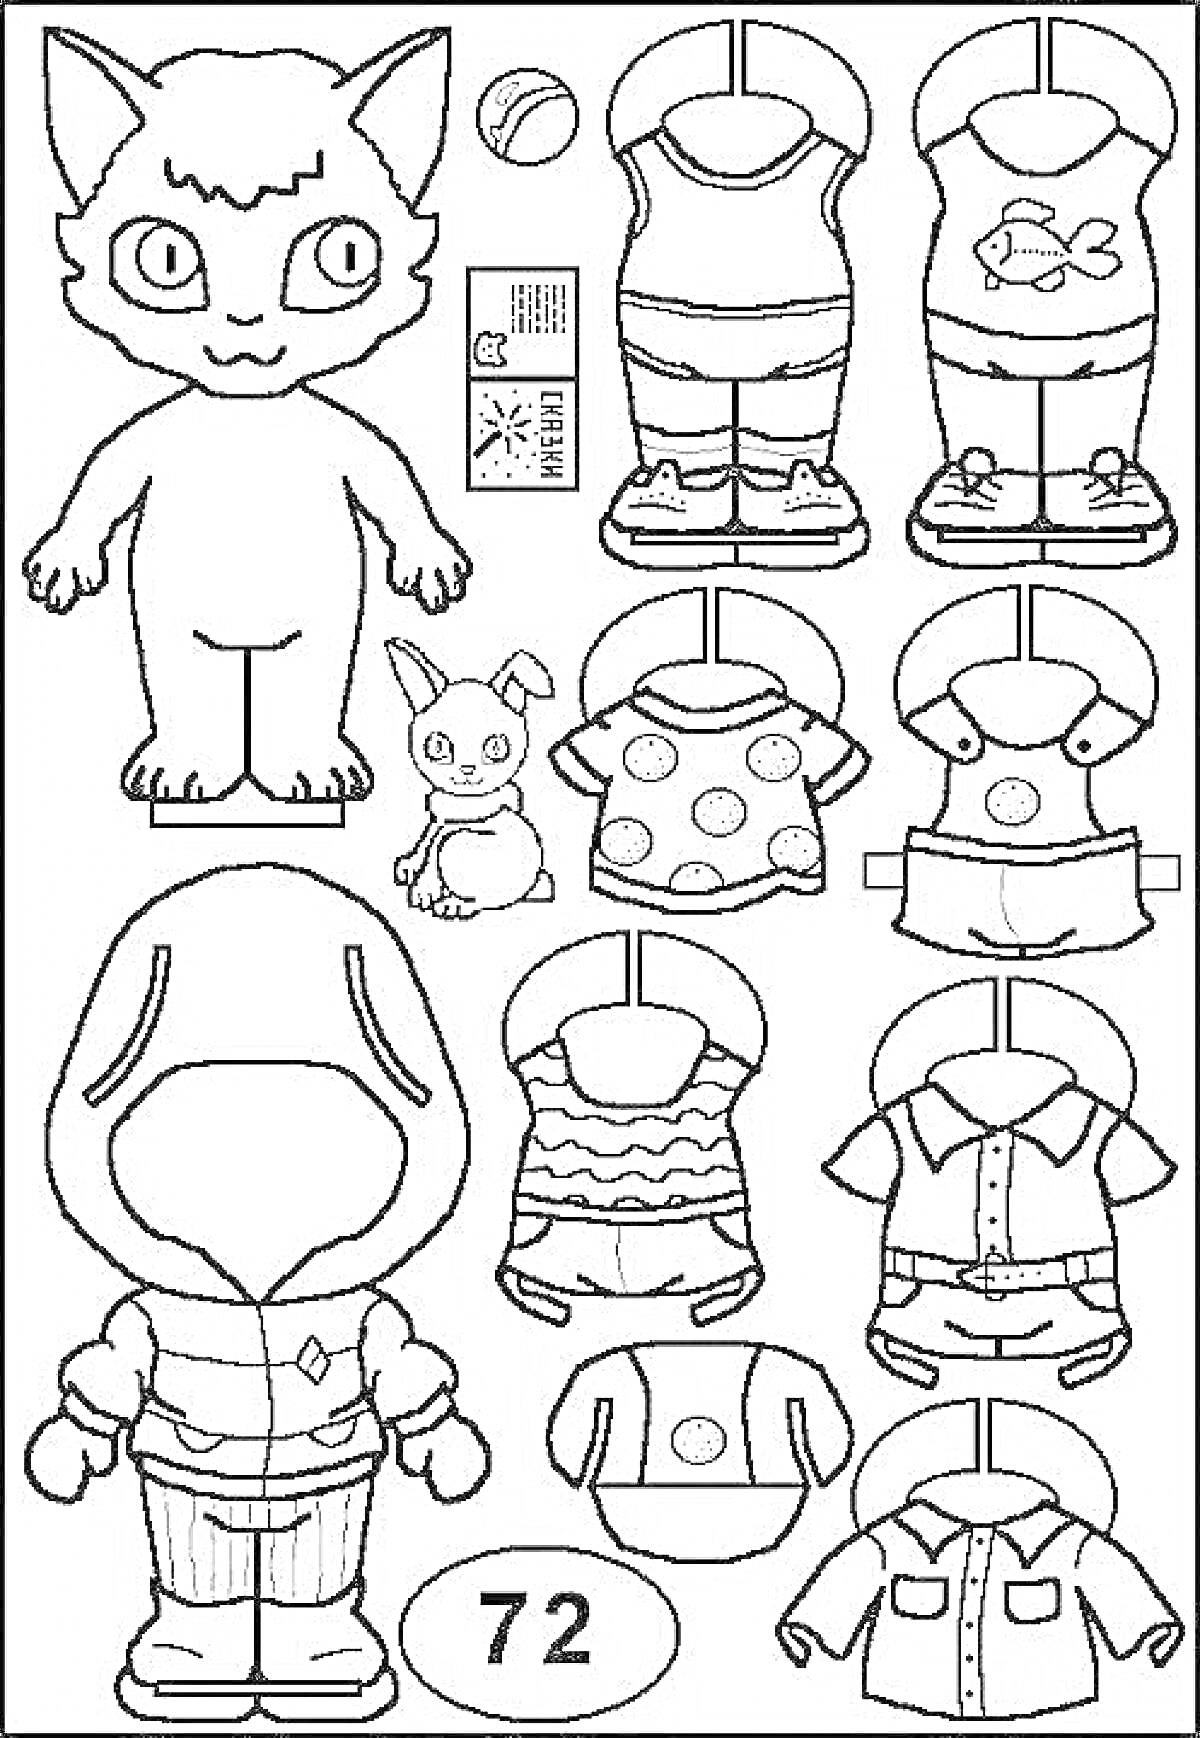 Раскраска Басик с одеждой, включая футболки, рубашки, платье, спортивный костюм и игрушку-кролика